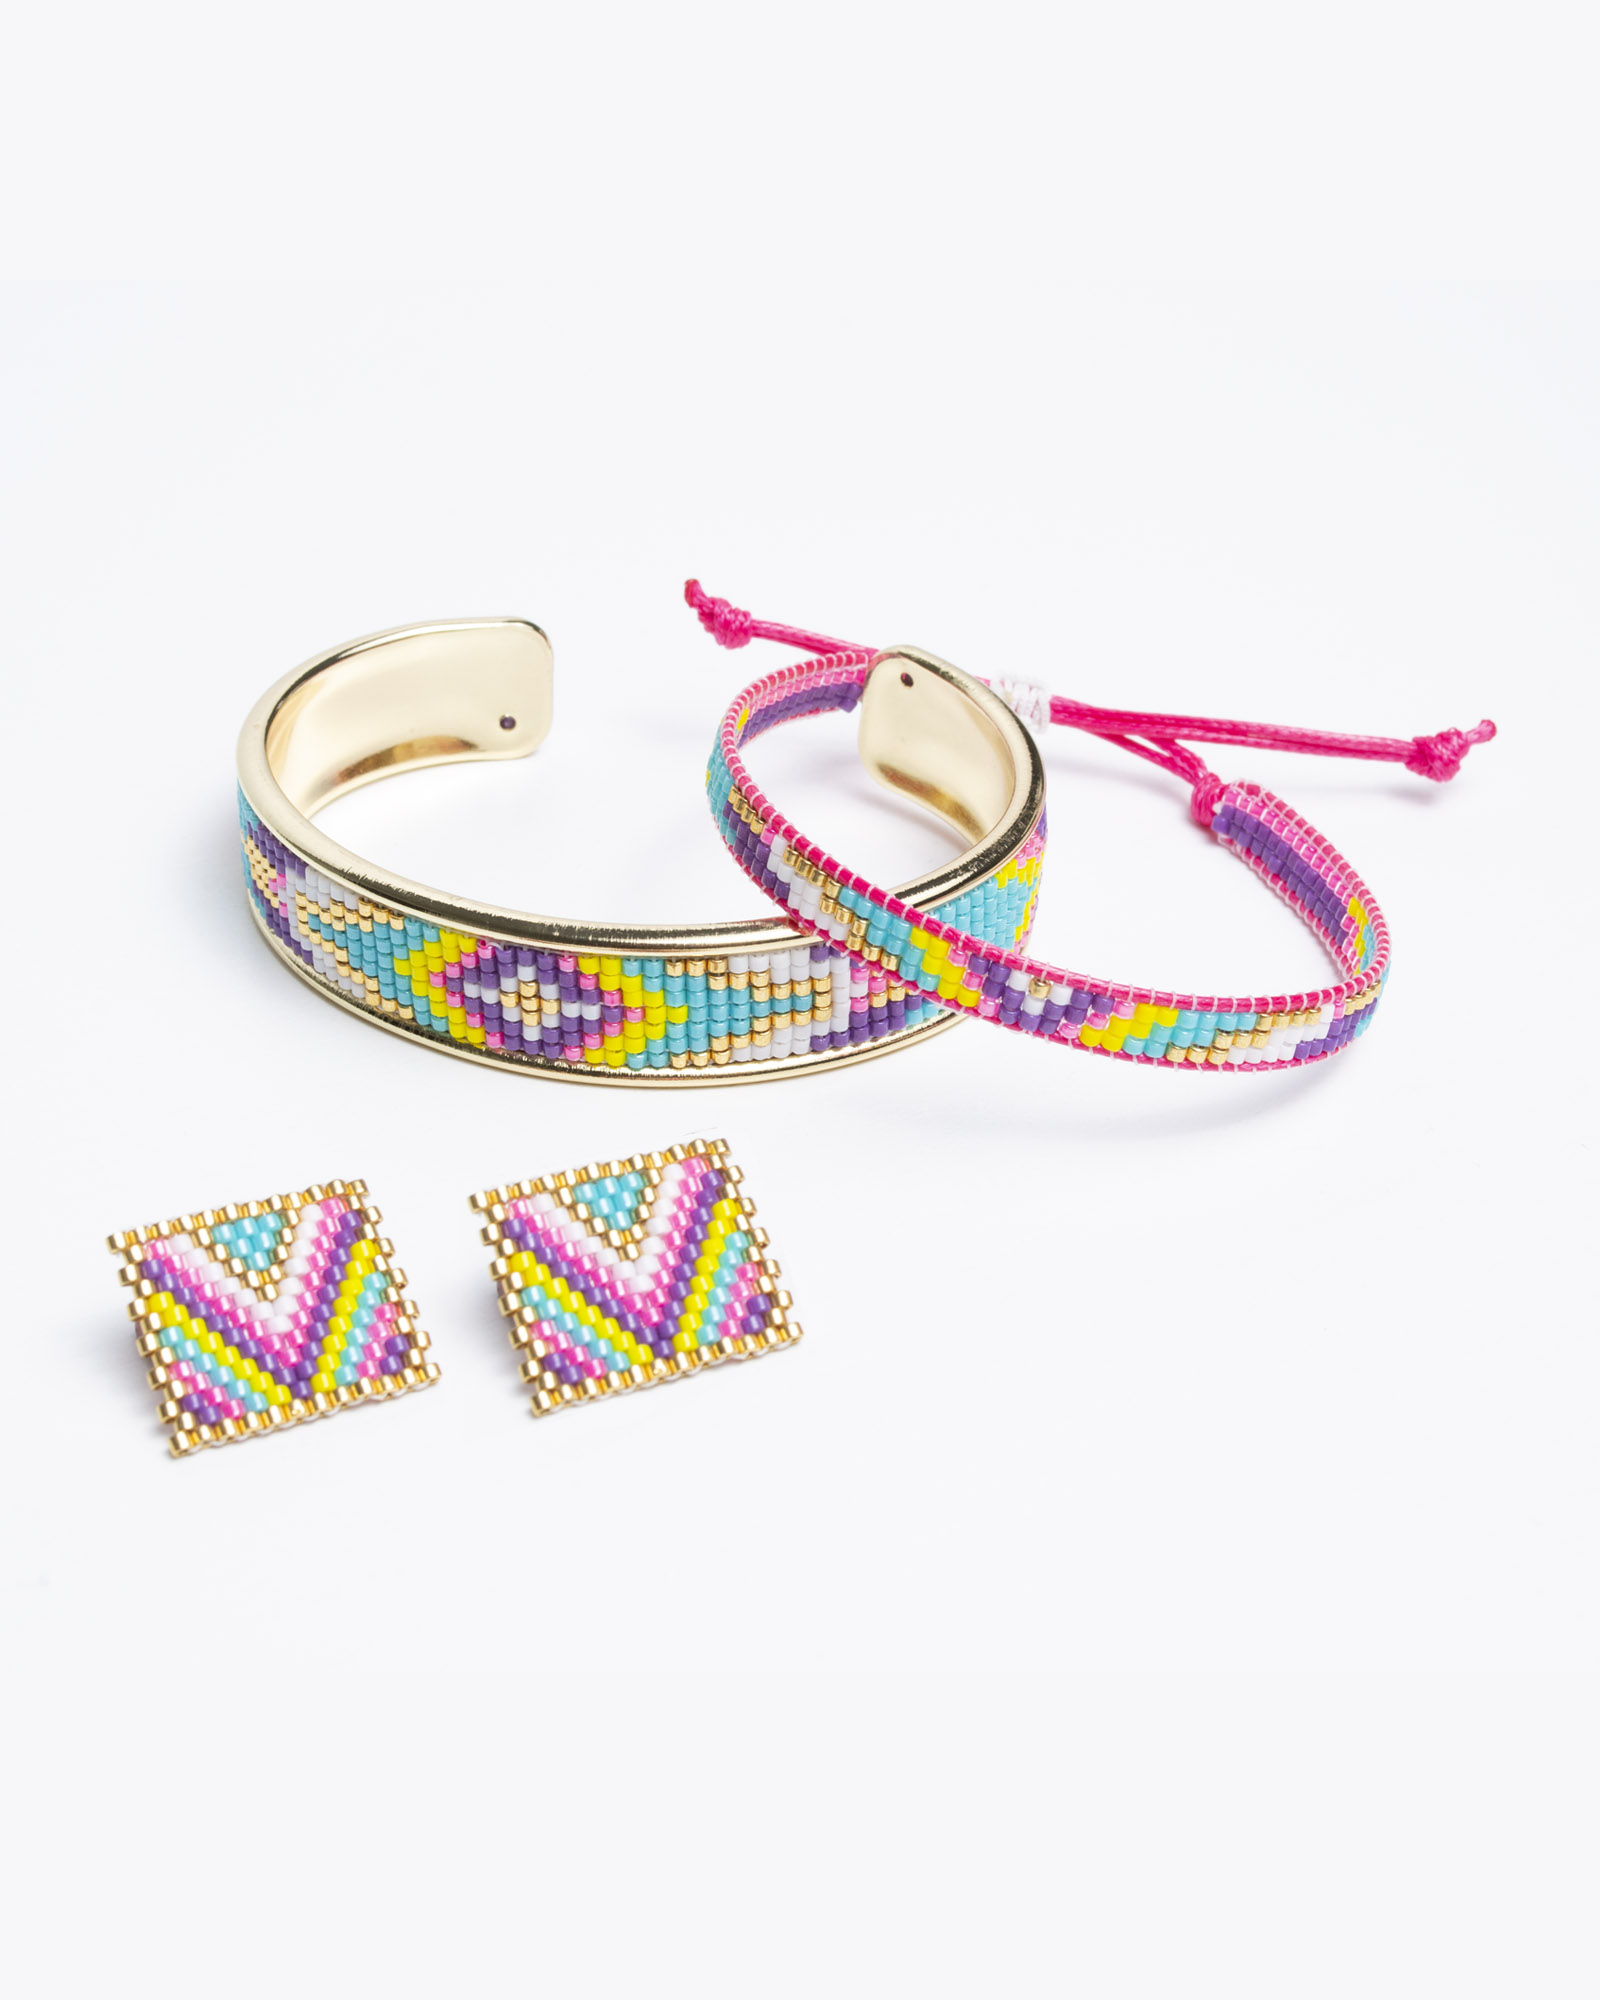 Geometric Pop Bracelet and earrings set